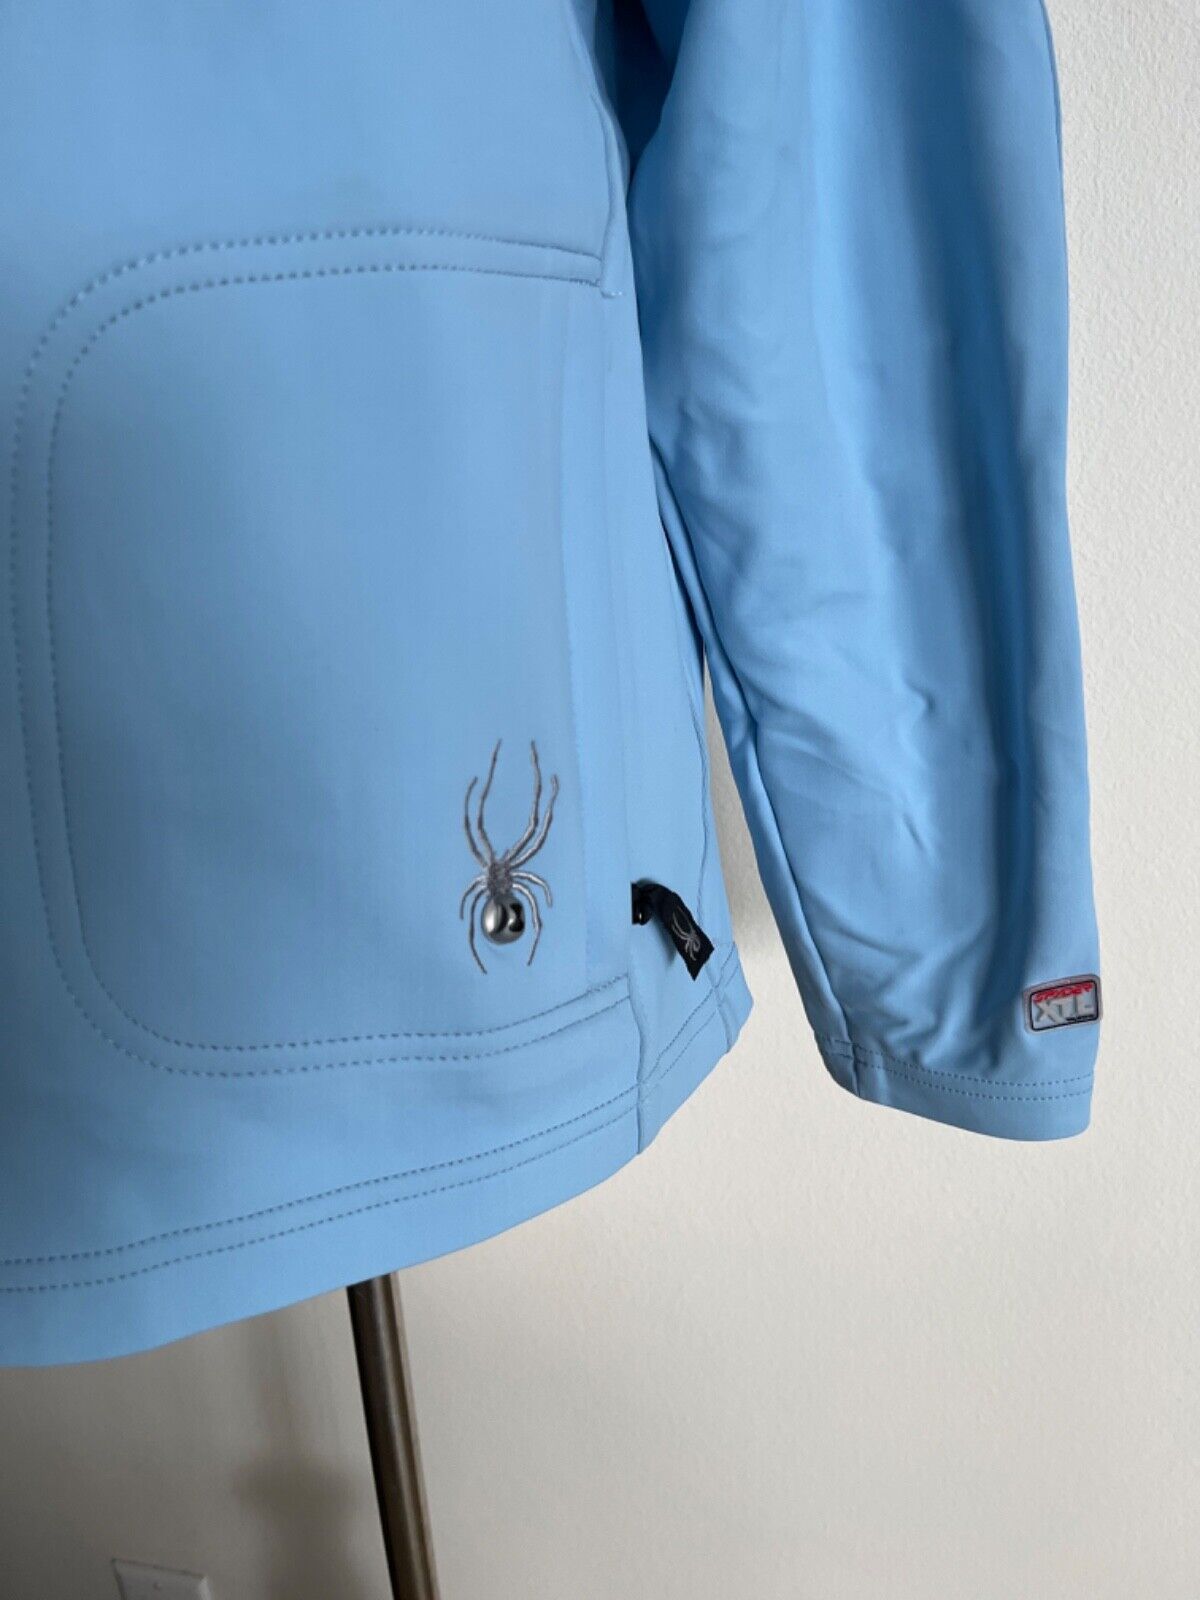 Spyder Womens Ski Coat Jacket Size 8 blue - image 3